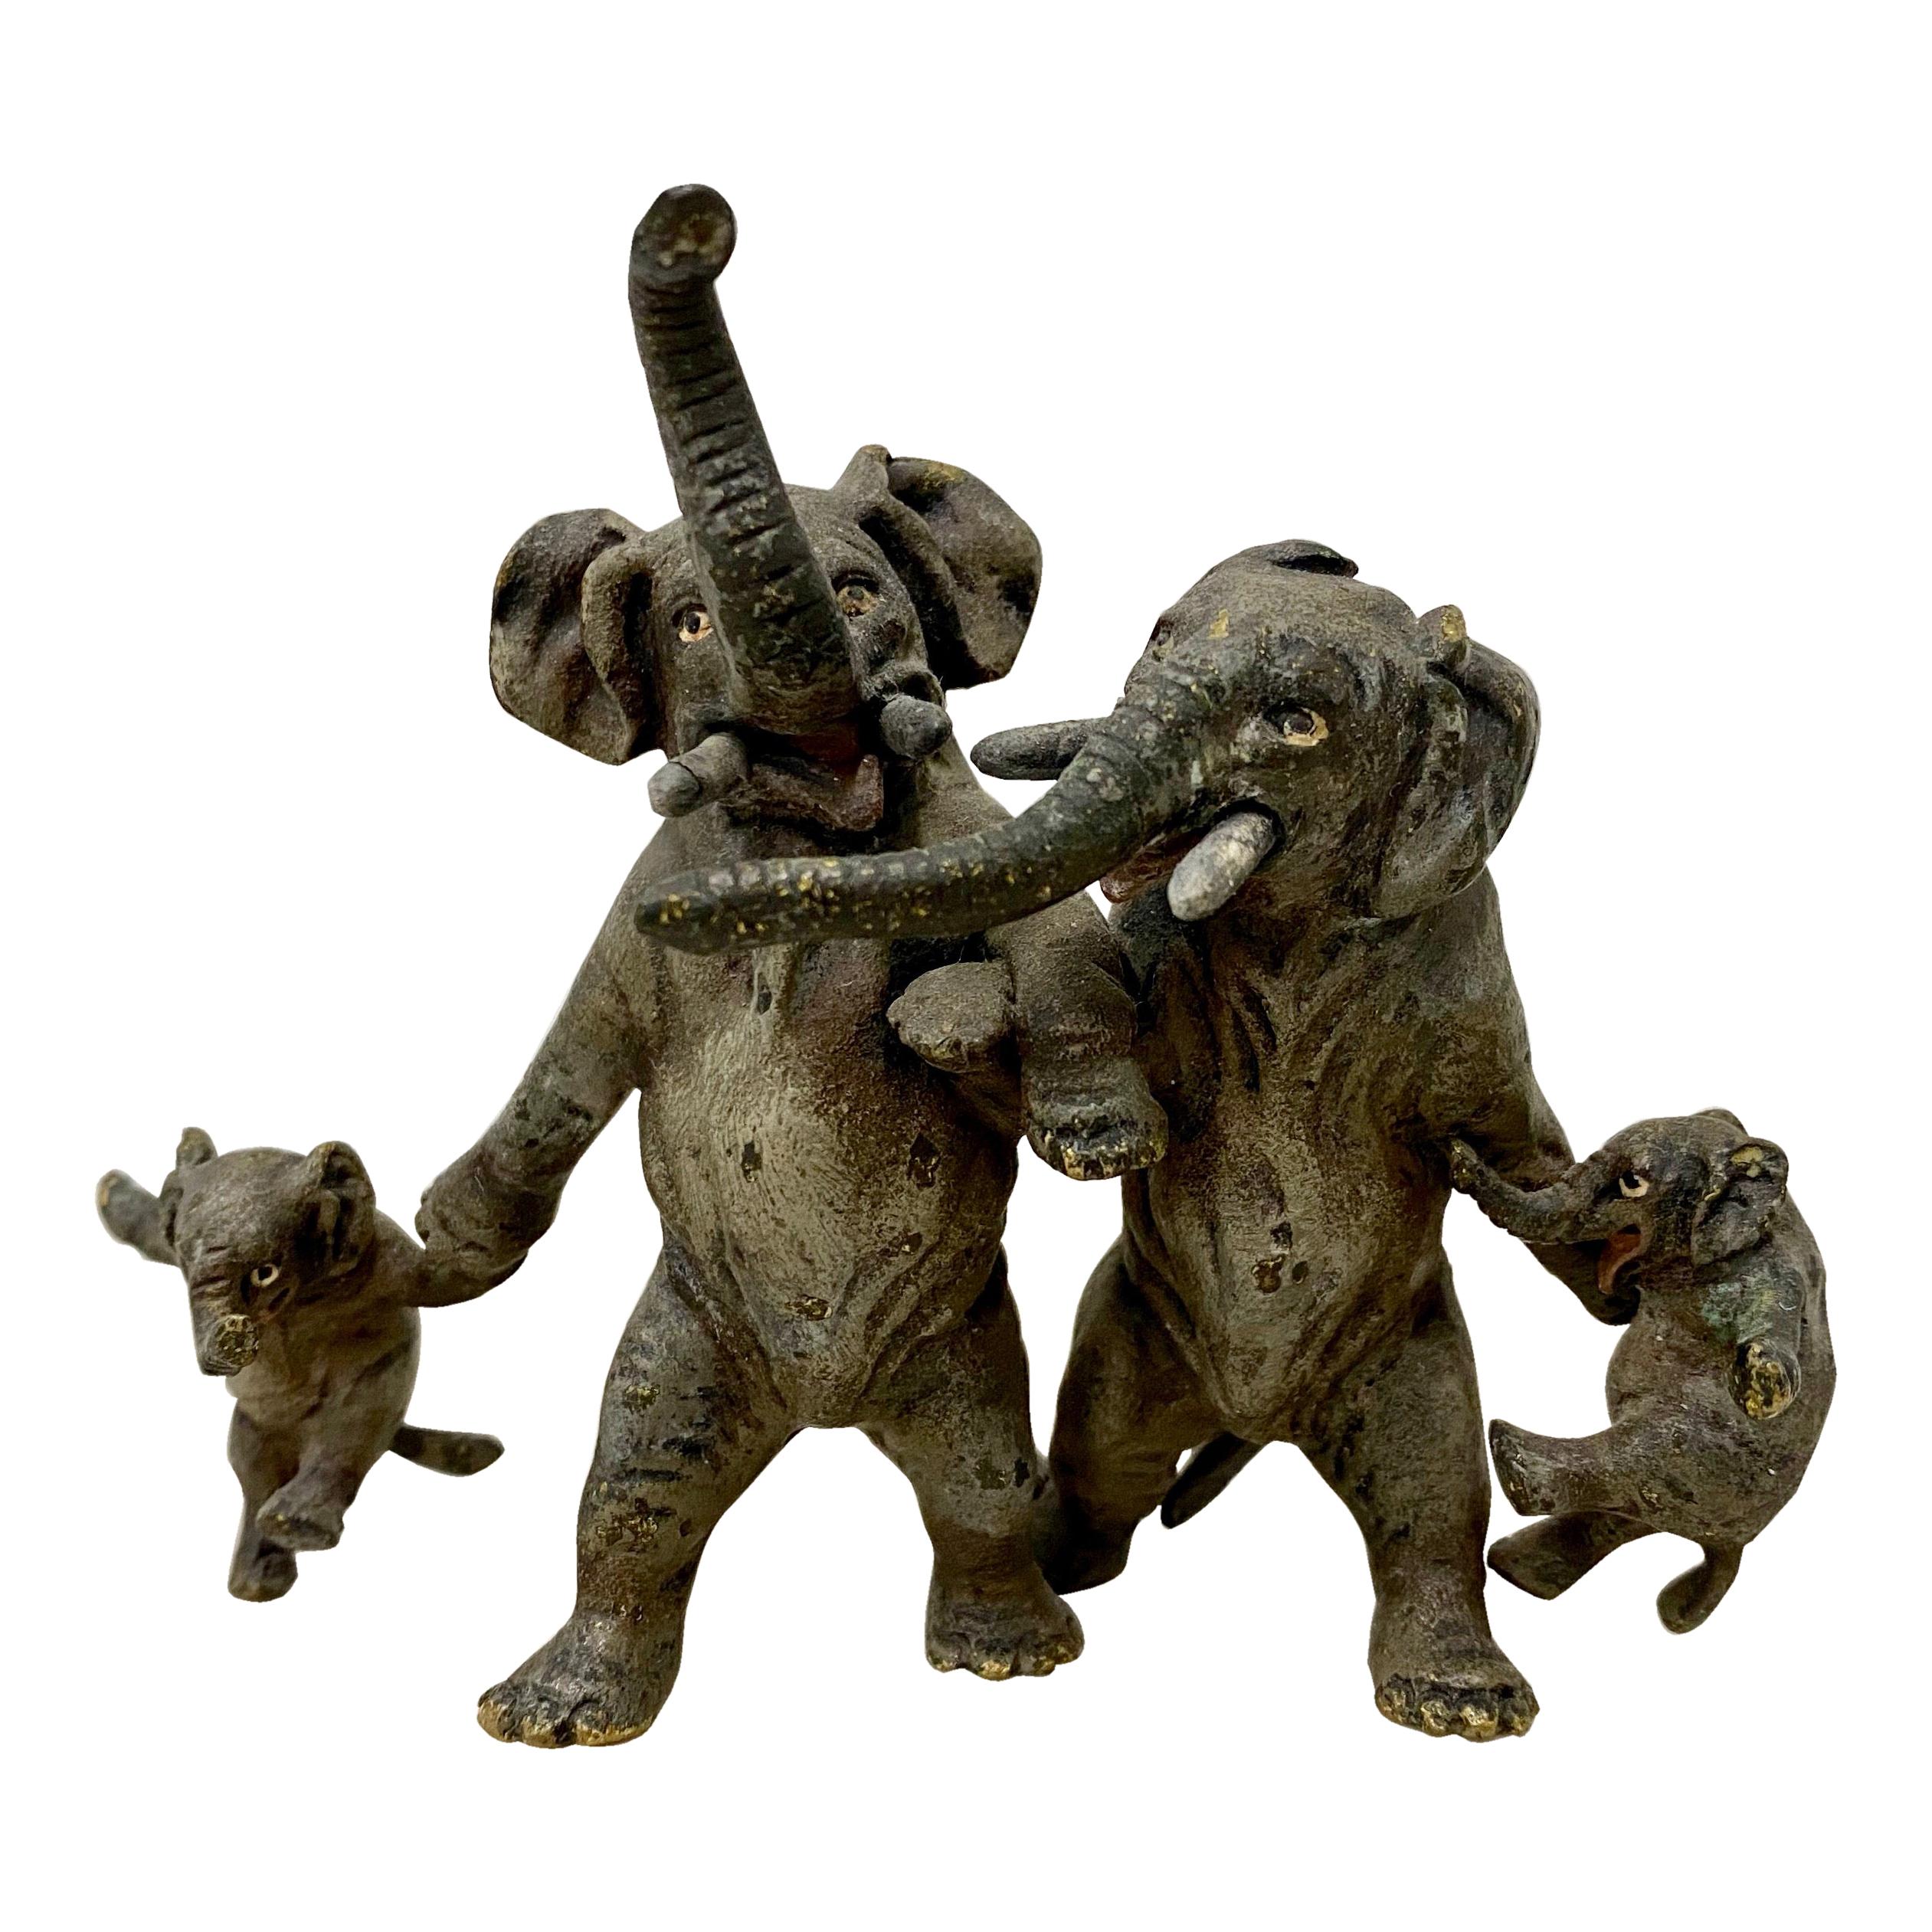 Miniature Geschutz Vienna Bronze "Elephant Family" Sculpture, circa1890